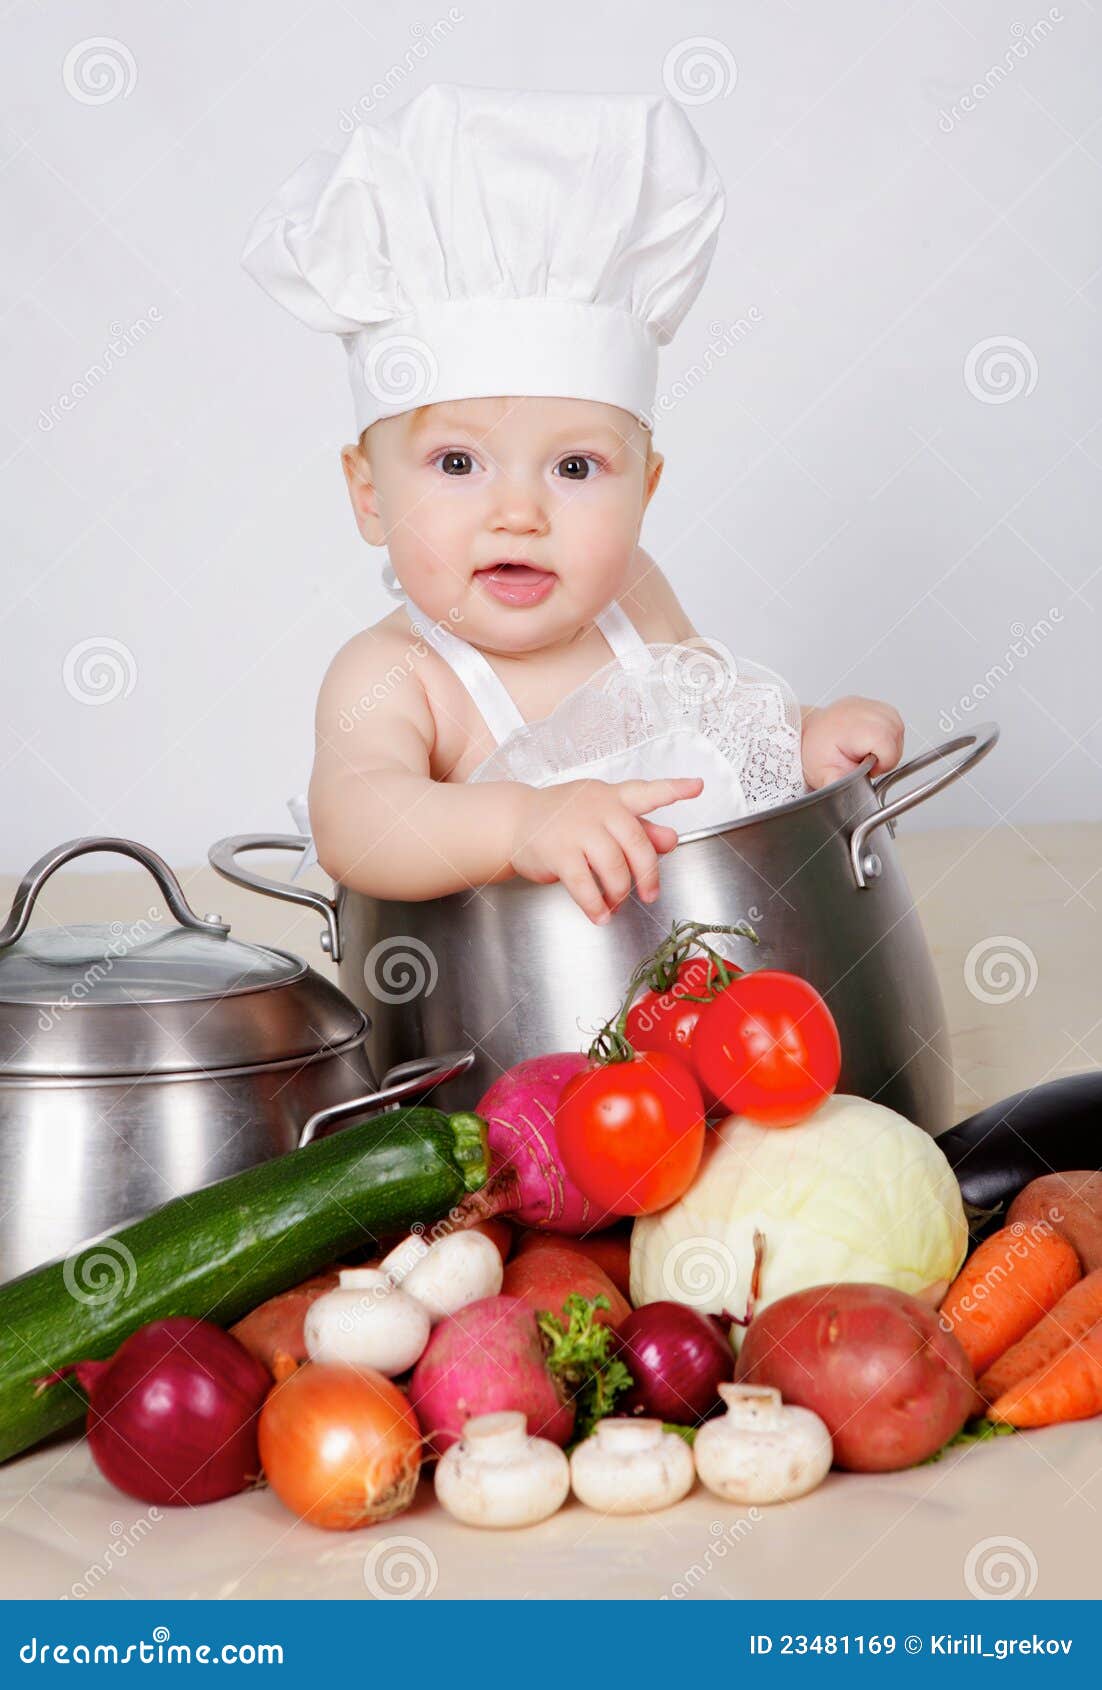 صور الاطفال روعة  Baby-cook-23481169